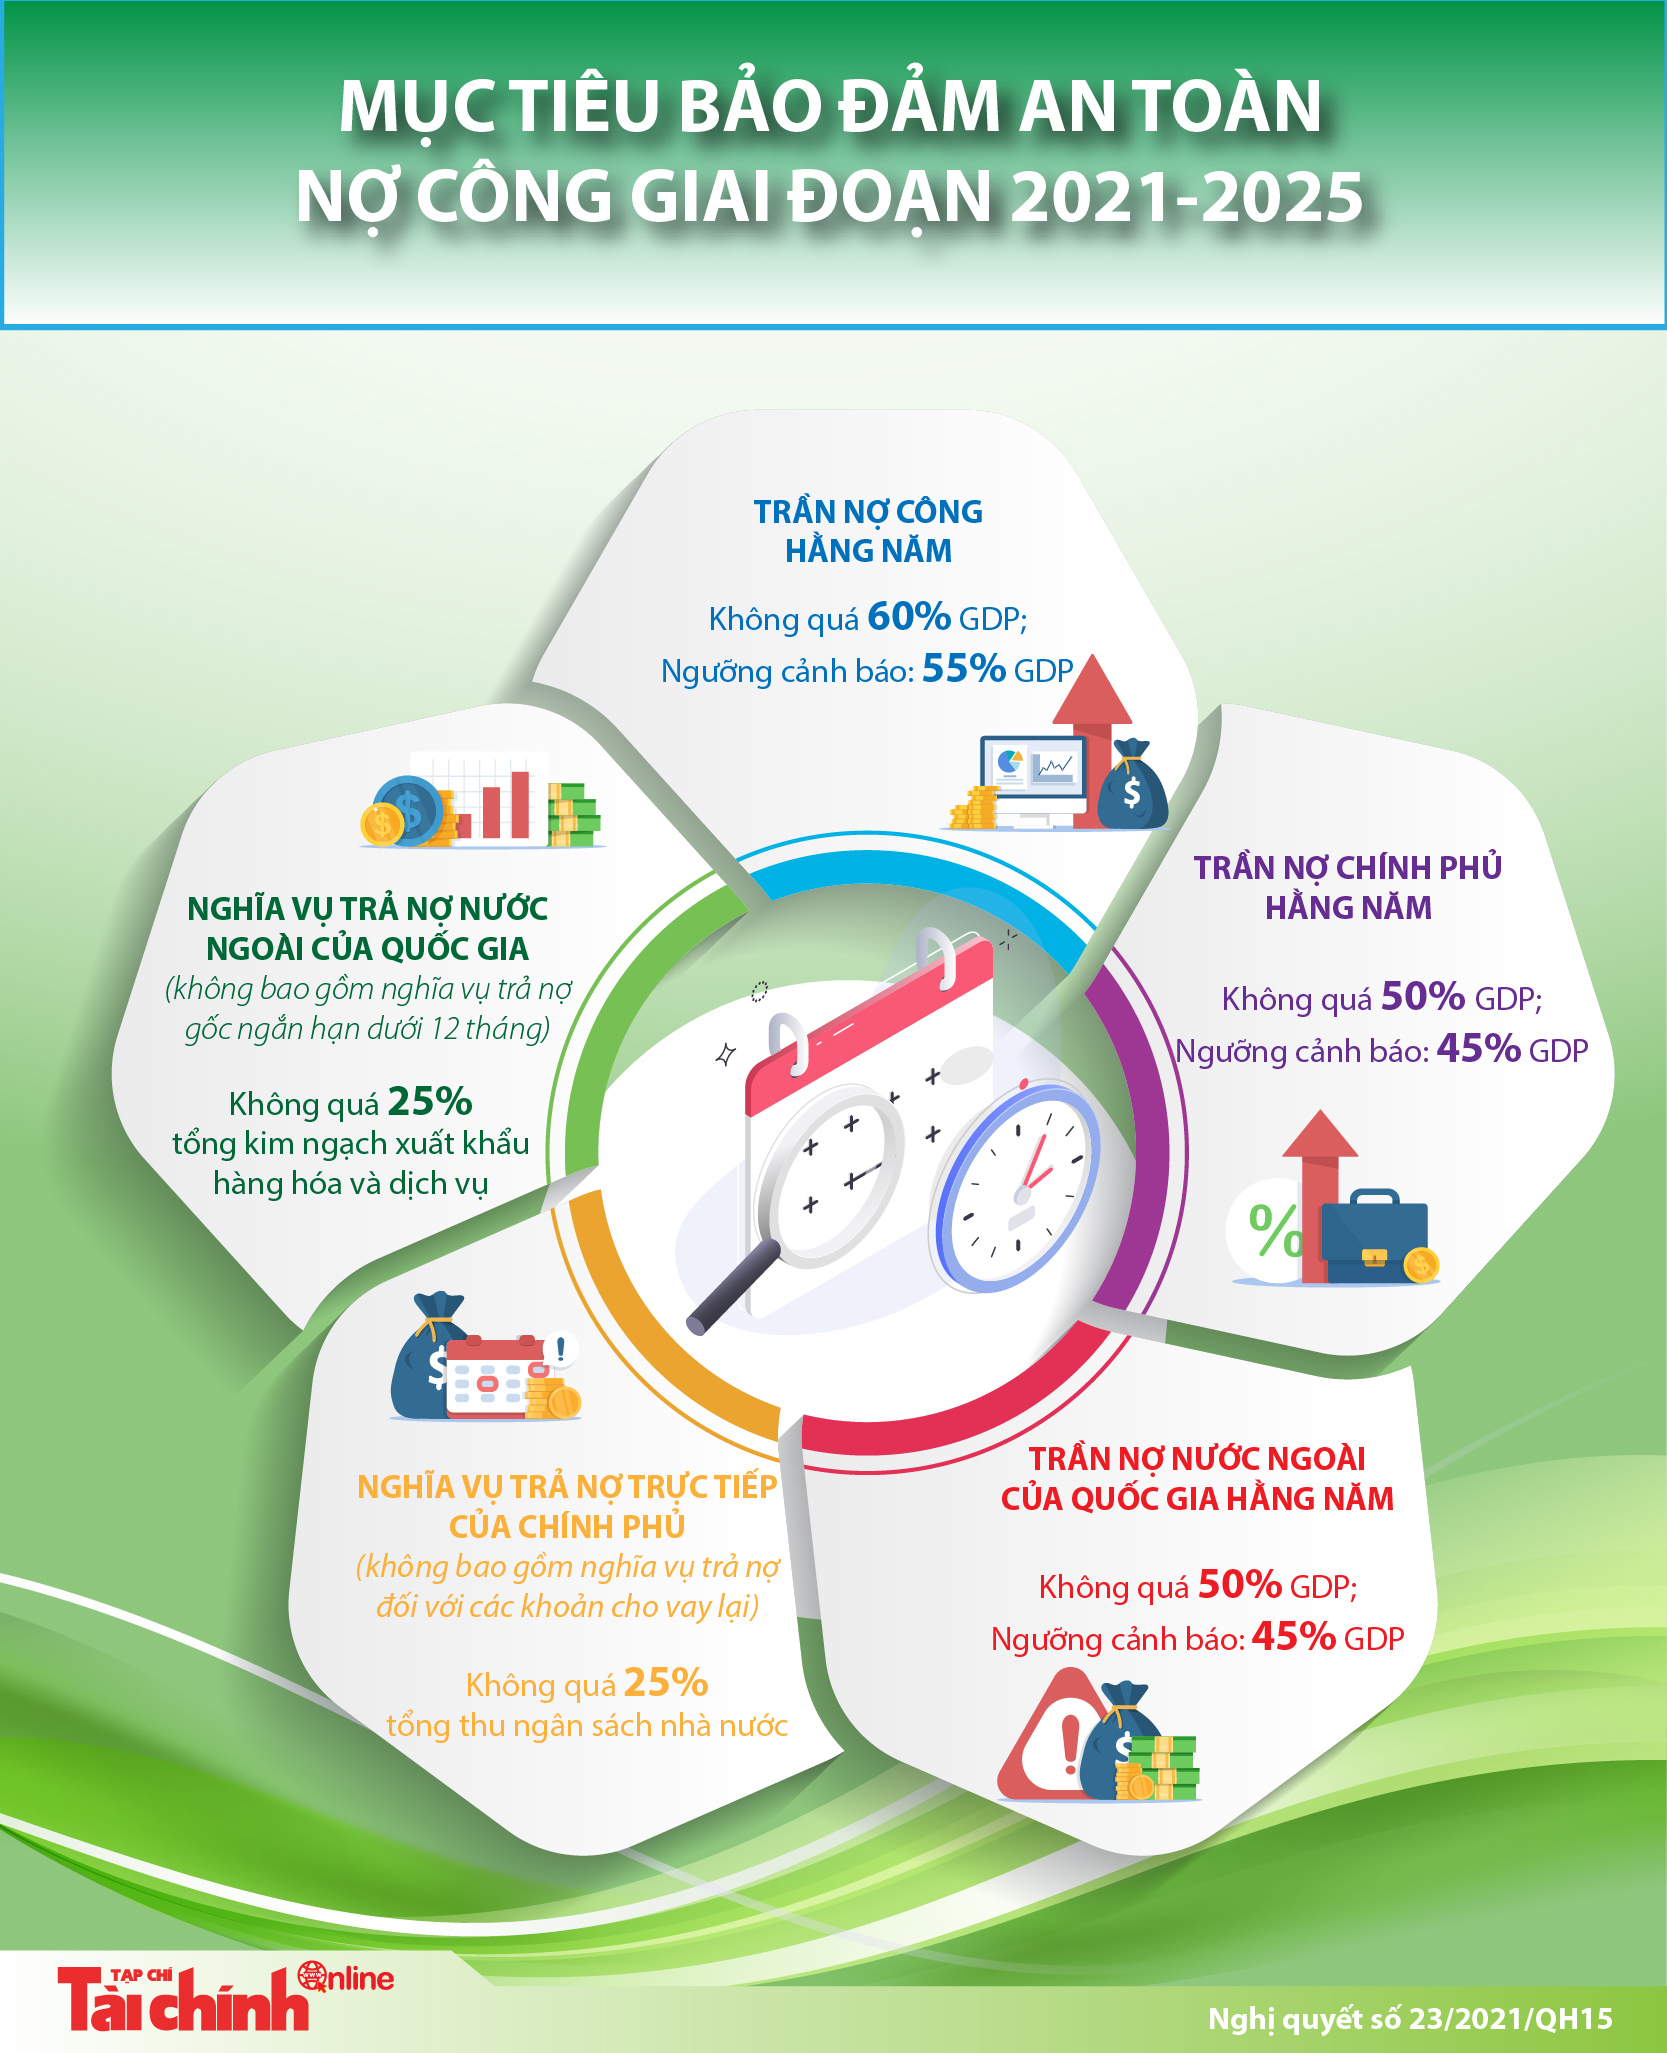 [Infographics] Mục tiêu bảo đảm an toàn nợ công giai đoạn 2021-2025 - Ảnh 1